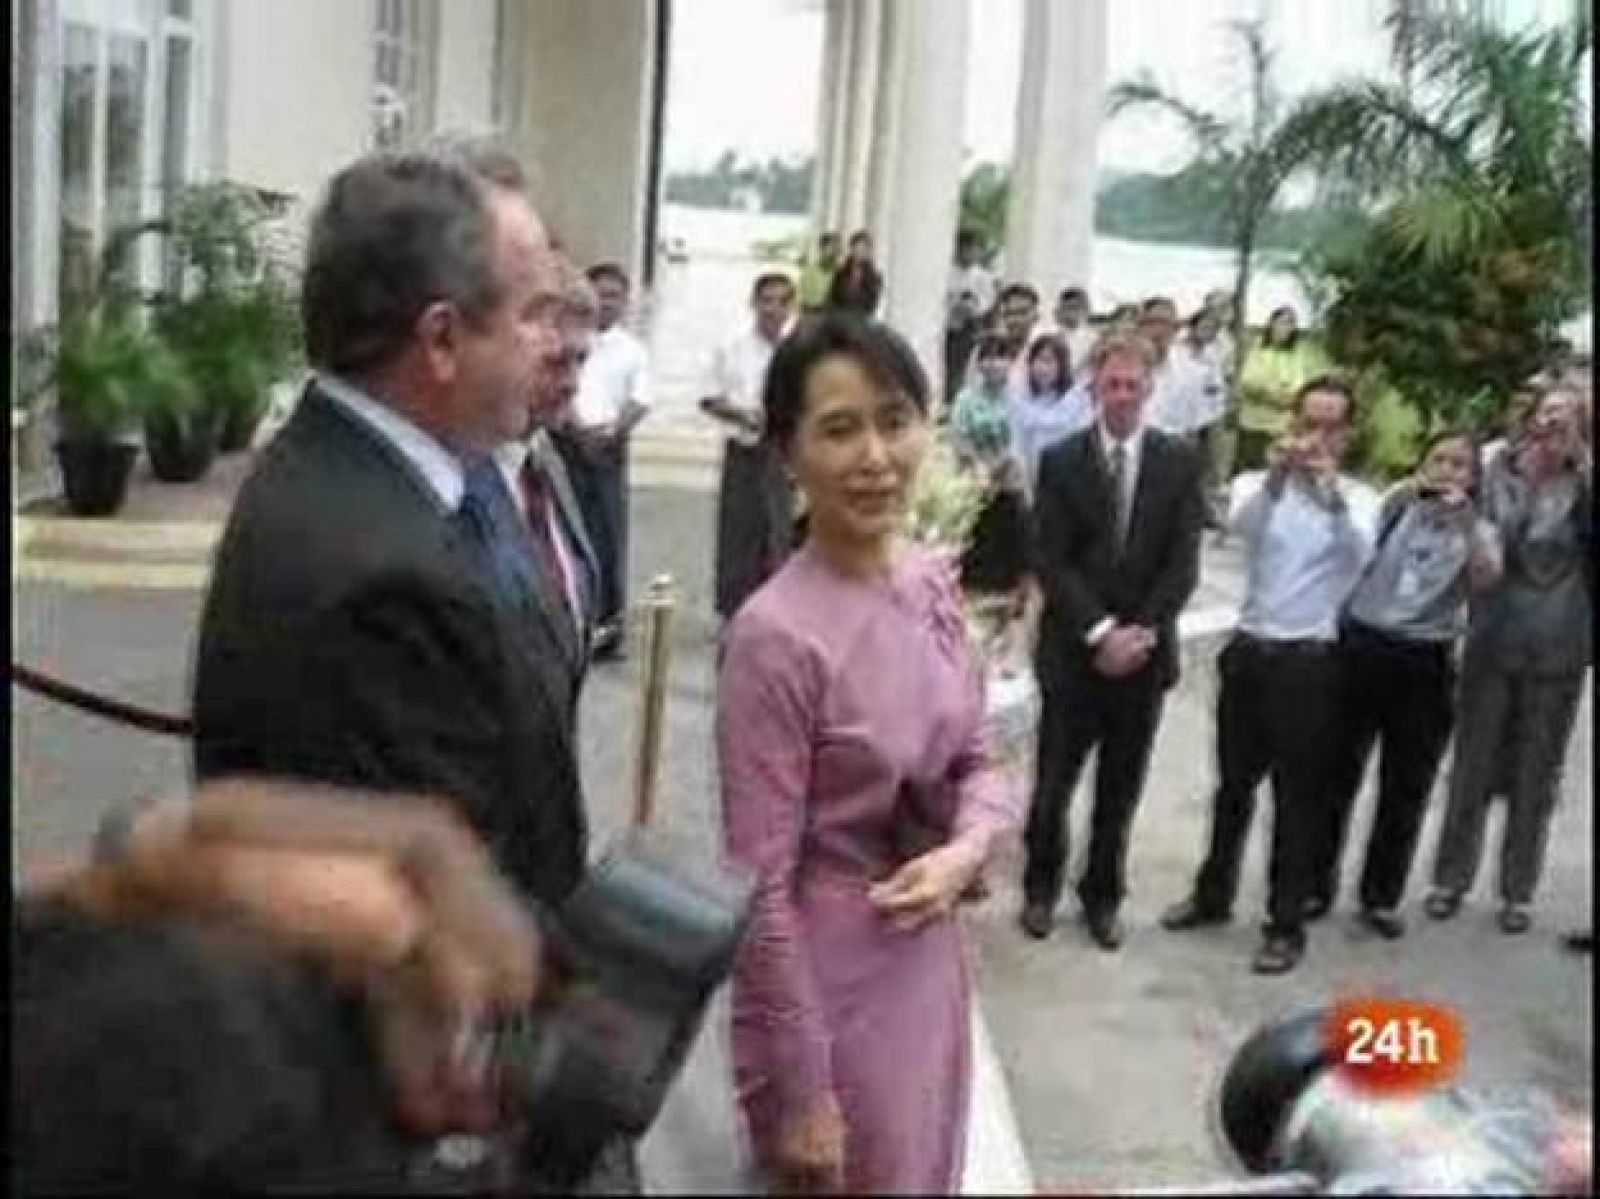 La líder de la oposición birmana Aung San Suu Kyi, que se encuentra bajo arresto domiciliario por el régimen militar, apareció en público por primera vez en seis años en un hotel de Rangún, este miércoles, acompañada por un diplomático de EE.UU. con quien se reunió.